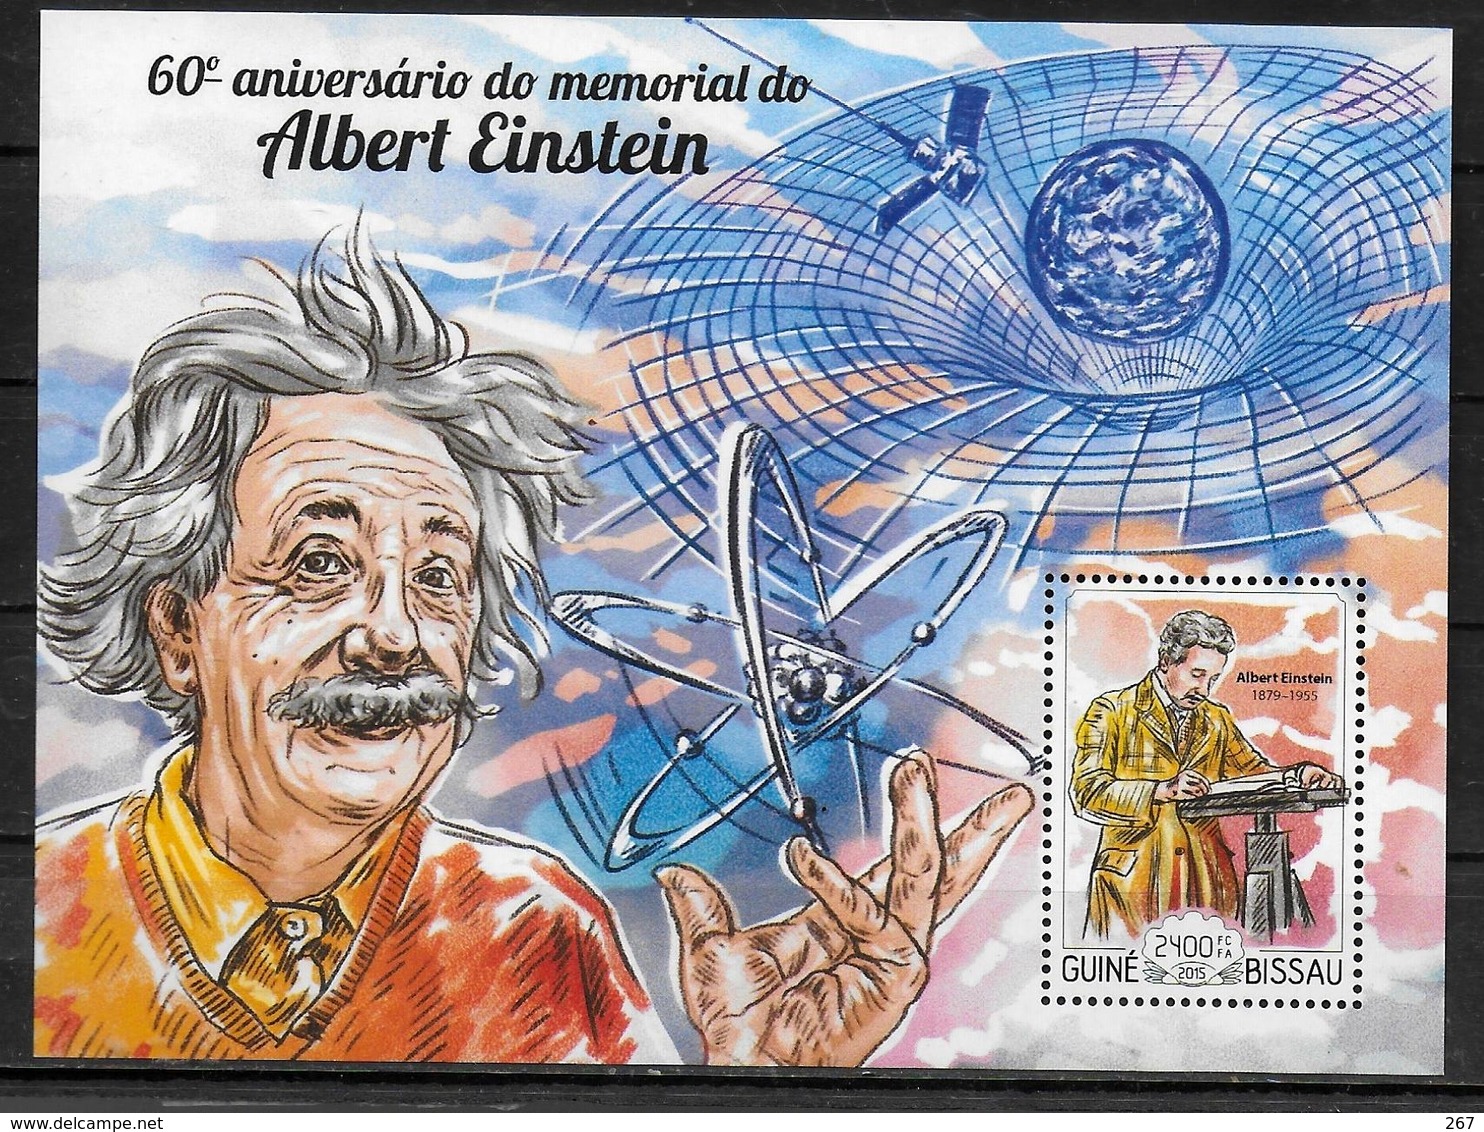 GUINEE BISSAU  BF1044  * *  ( Cote 14e ) Abert Einstein Nobel Physique - Albert Einstein